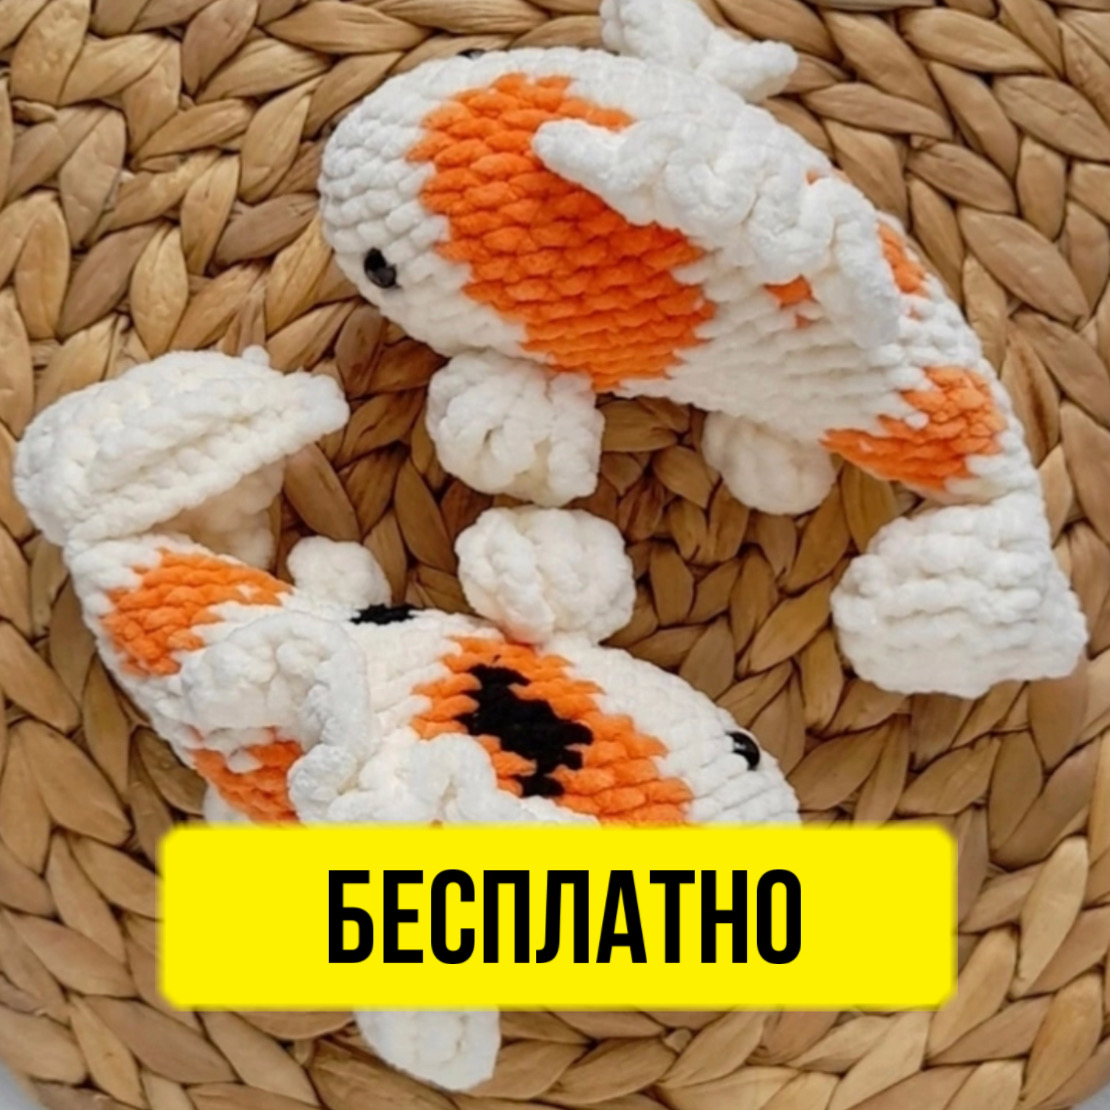 Бесплатный мастер-класс от Надежды Жислиной по вязанию игрушки в технике амигуруми в виде рыбы.